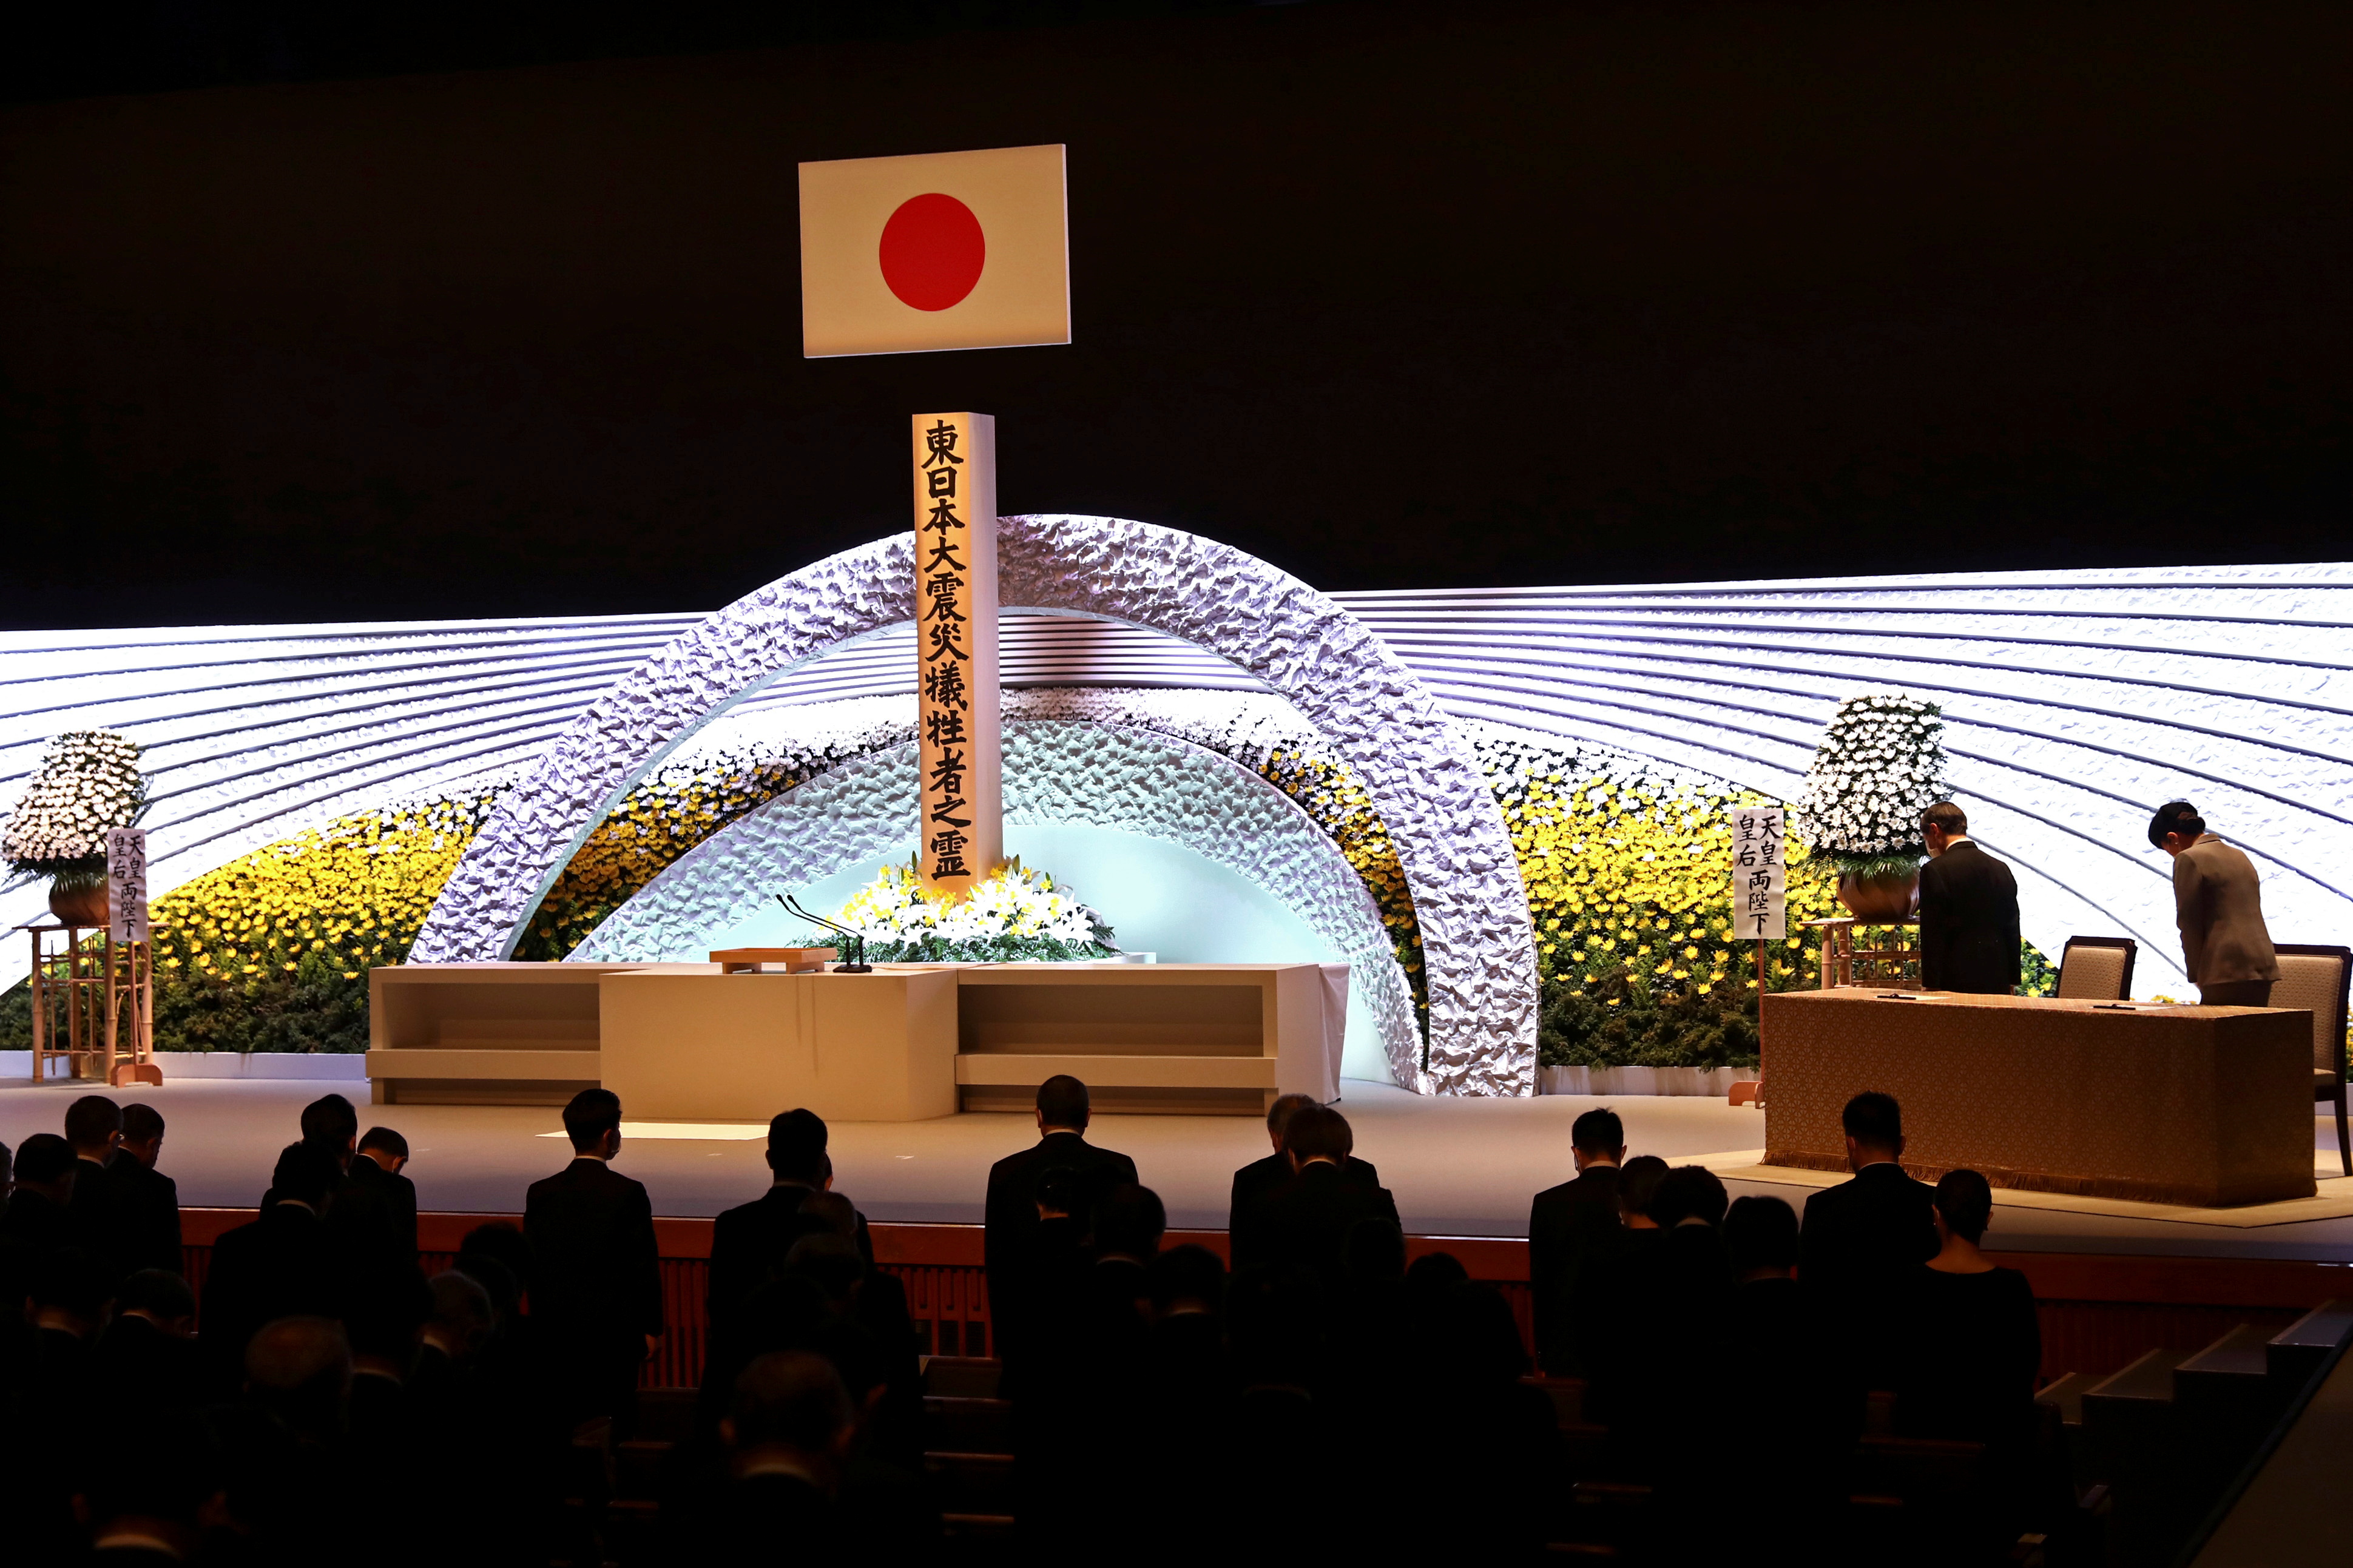 Japón conmemora los diez años de la triple catástrofe de marzo de 2011